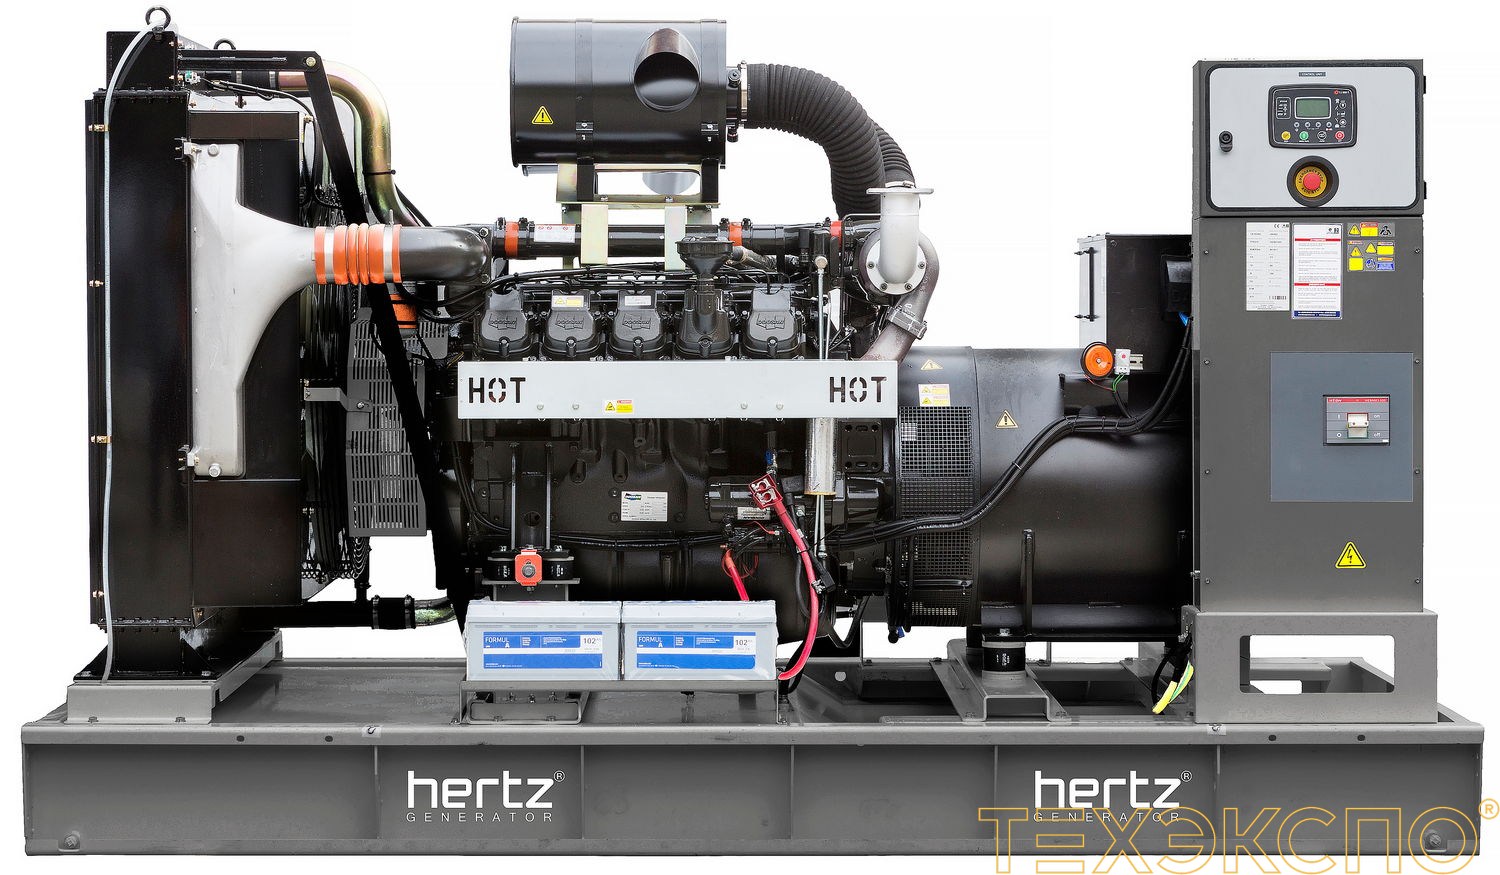 HERTZ HG660DL - ДЭС 480 кВт в Санкт-Петербурге за 9 973 838 рублей | Дизельная электростанция в Техэкспо